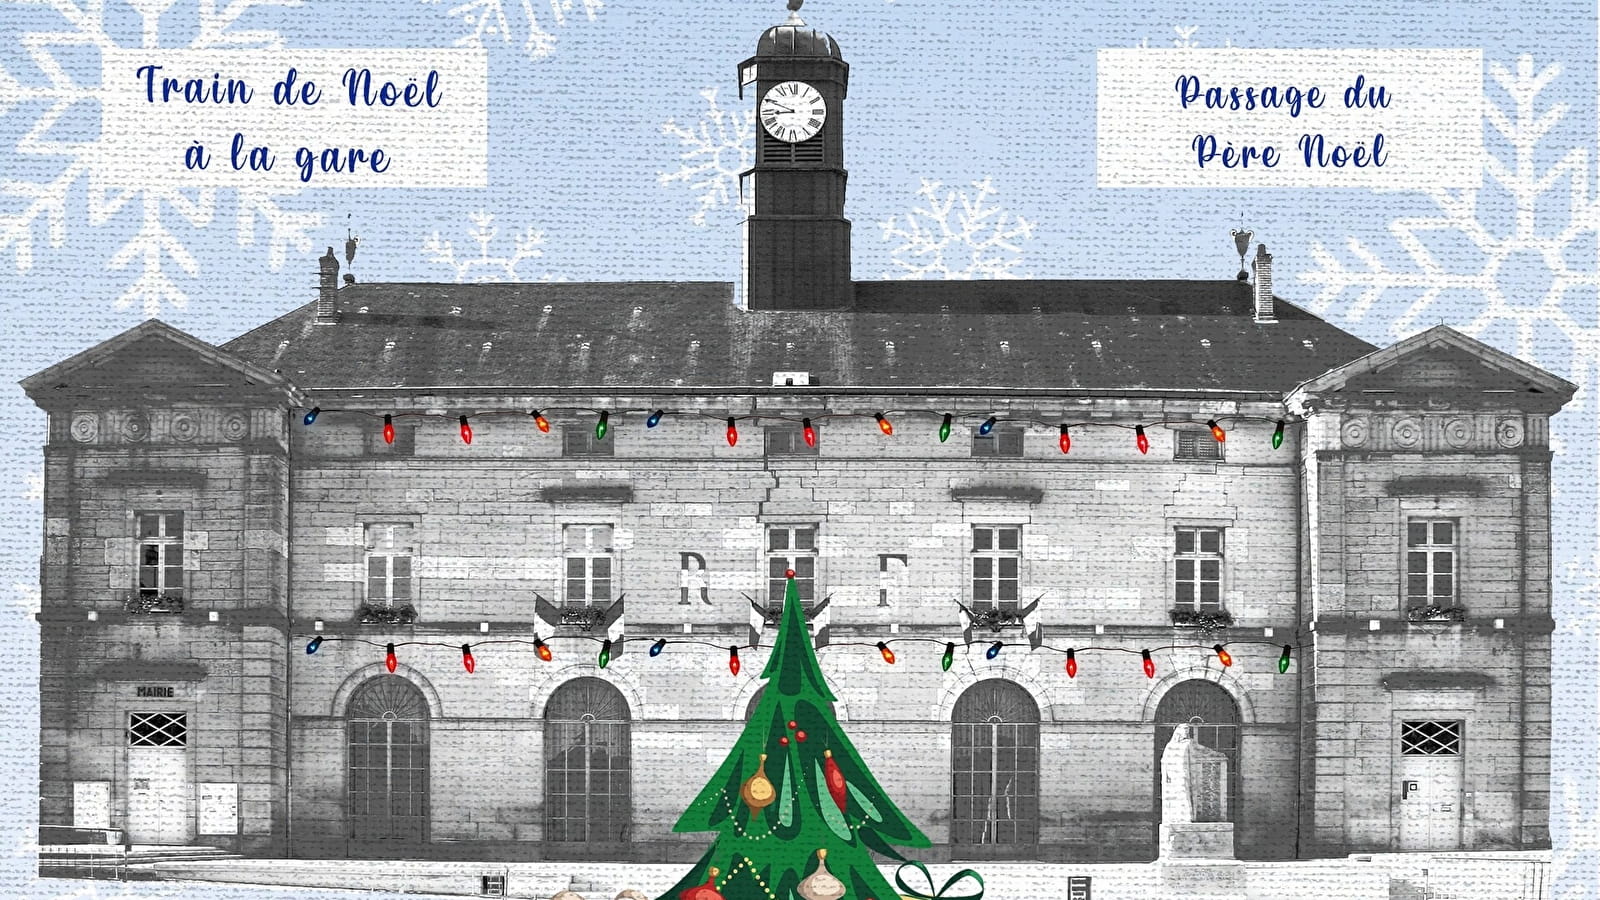 30ème marché de Noël de Bligny-sur-Ouche